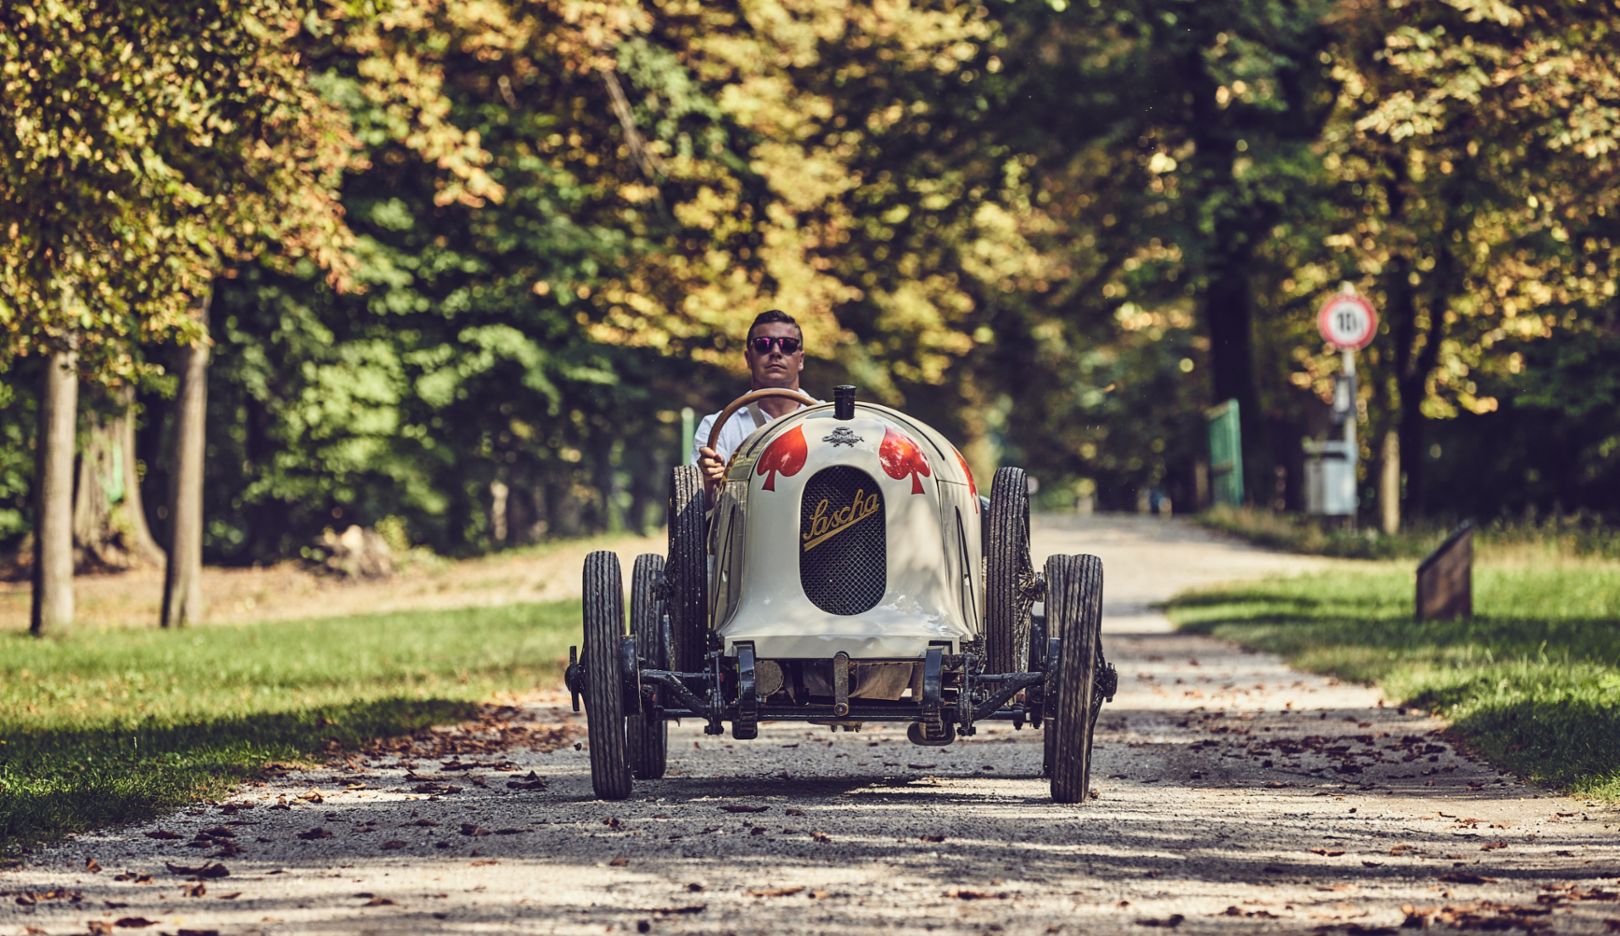 1922 年製レーシングカーは砂まみれのコースもなんのその。